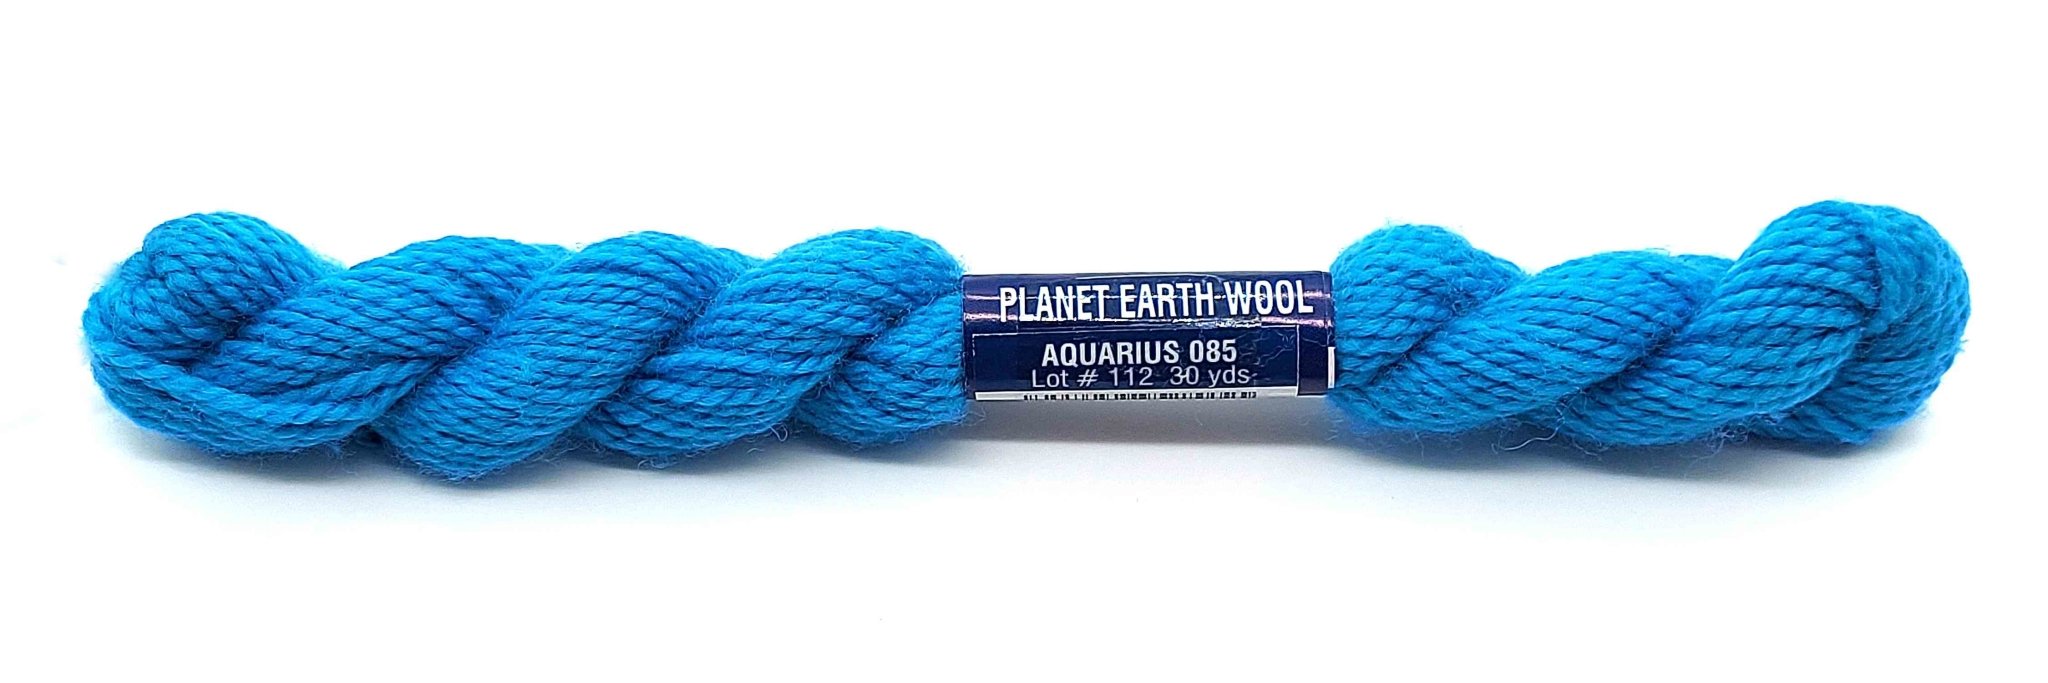 Planet Earth Wool 085 Aquarius - The Flying Needles